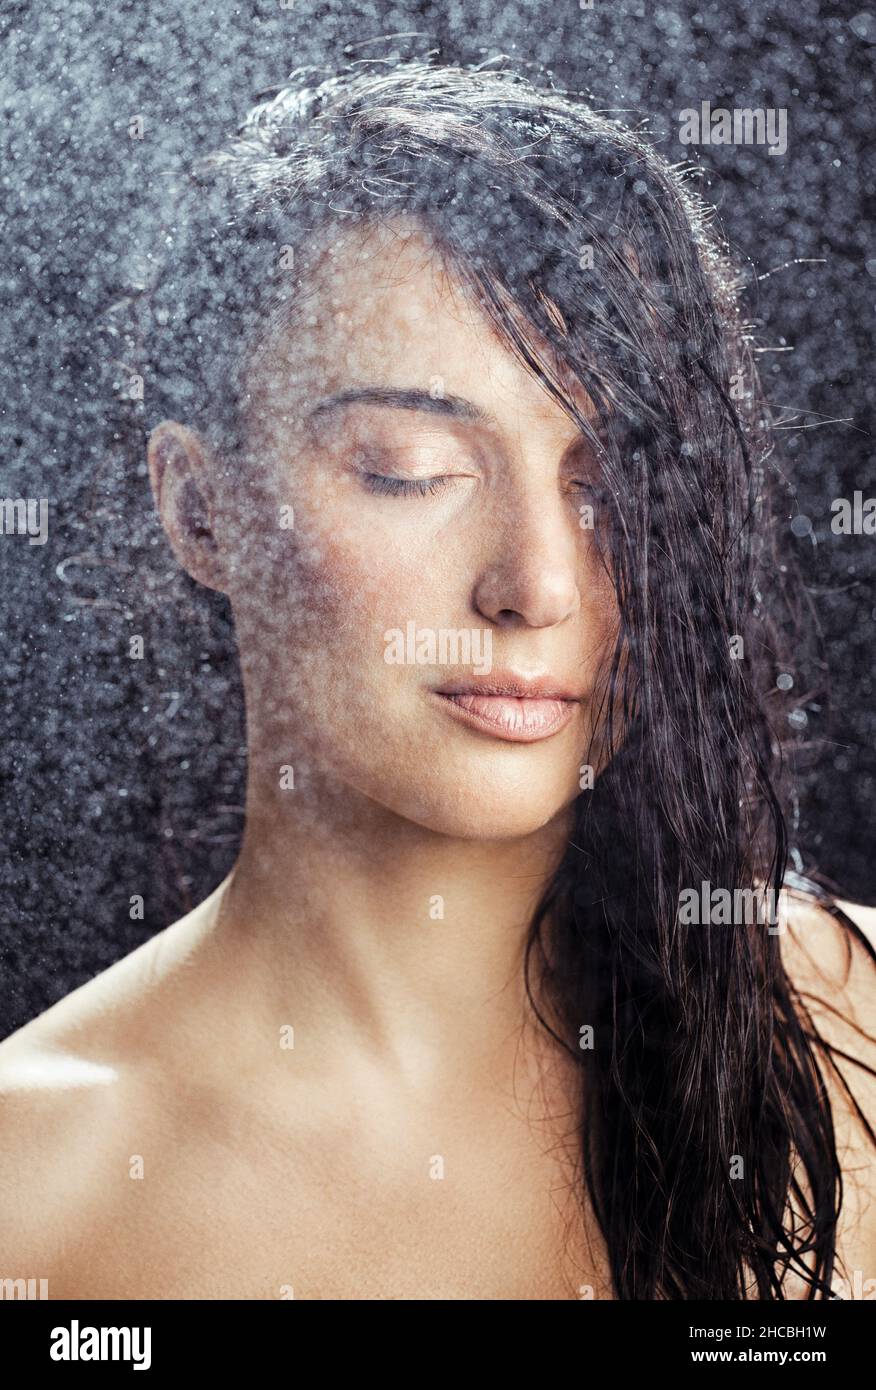 Wasser sprüht auf Frau mit geschlossenen Augen Stockfoto